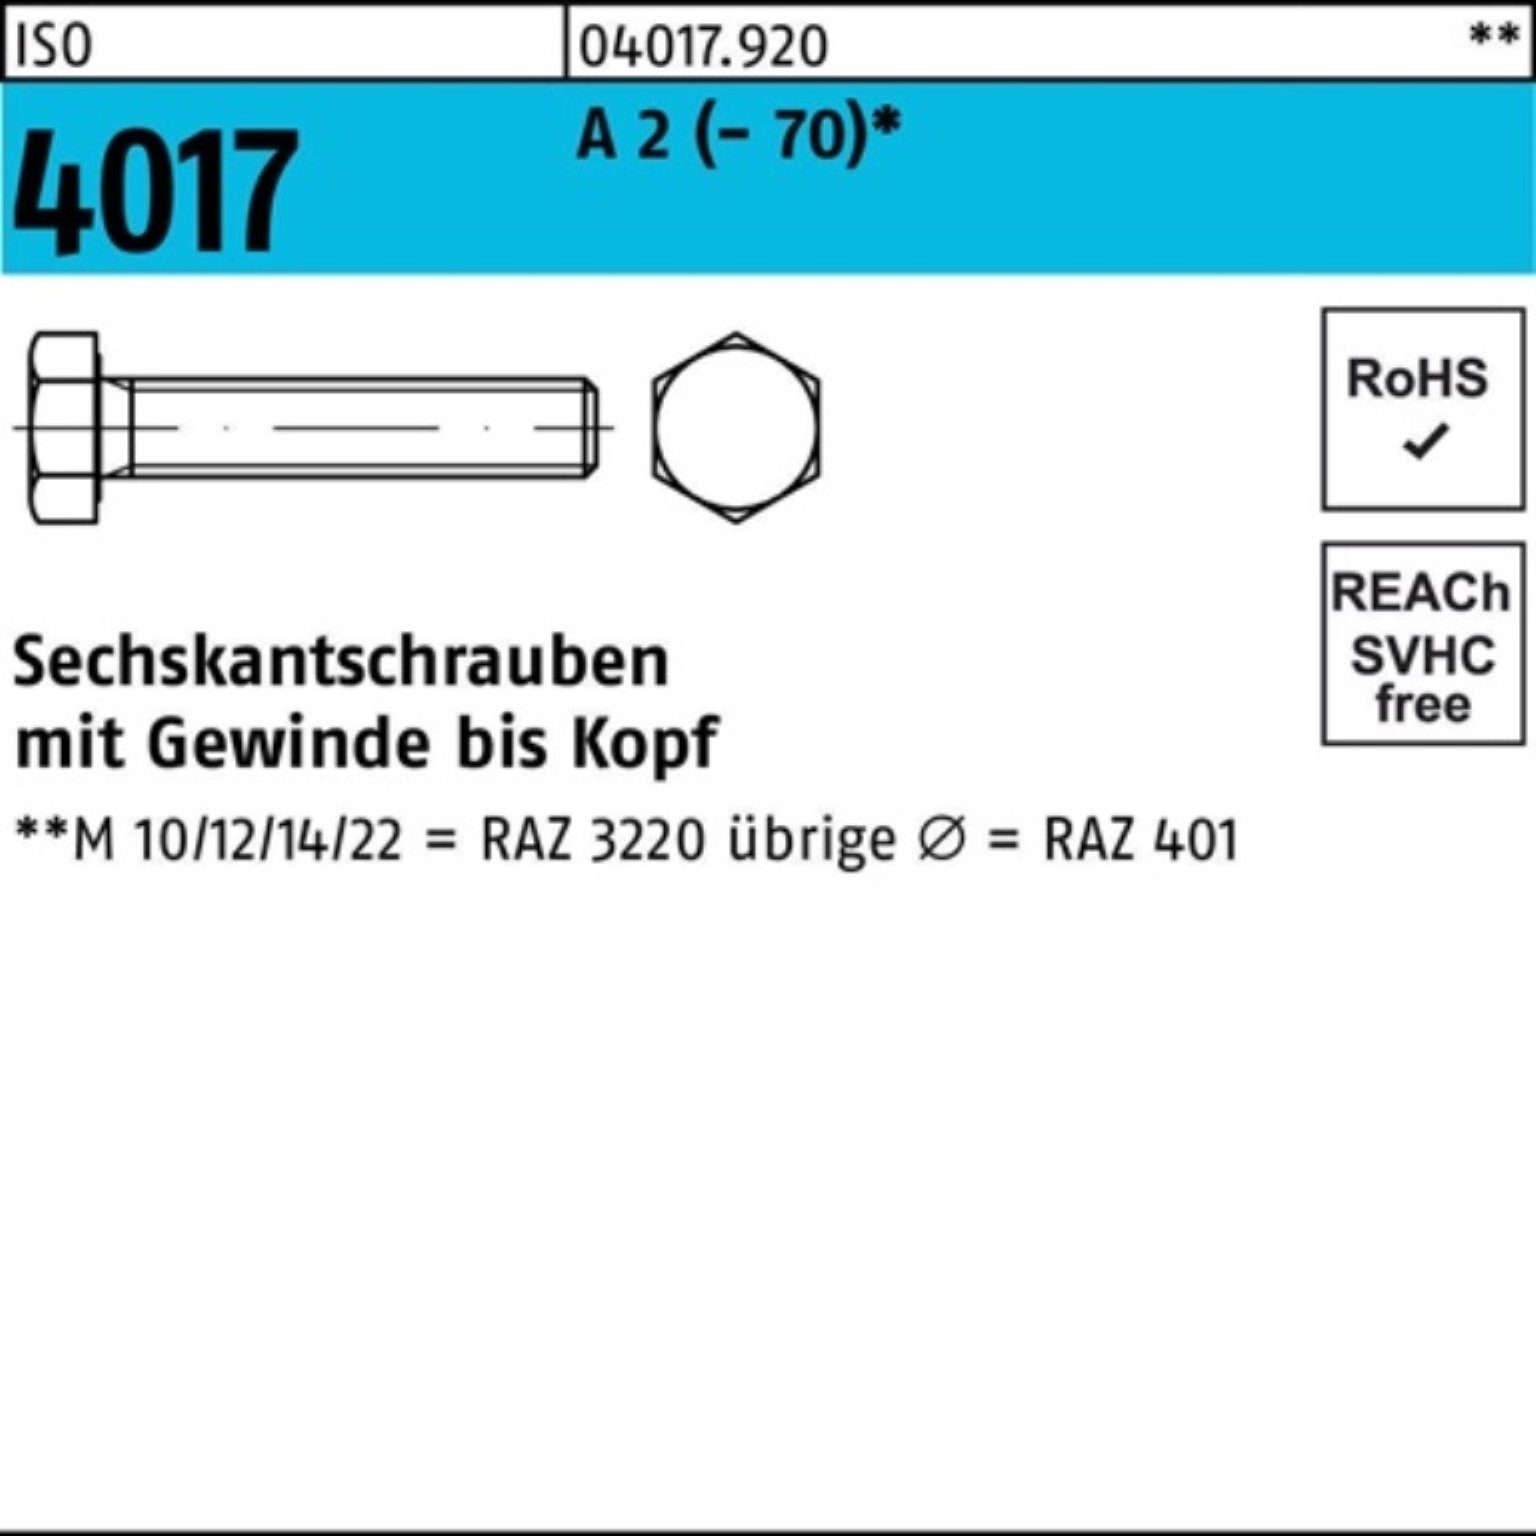 Bufab Sechskantschraube 100er Pack Sechskantschraube ISO 4017 VG M18x 65 A 2 (70) 25 Stück